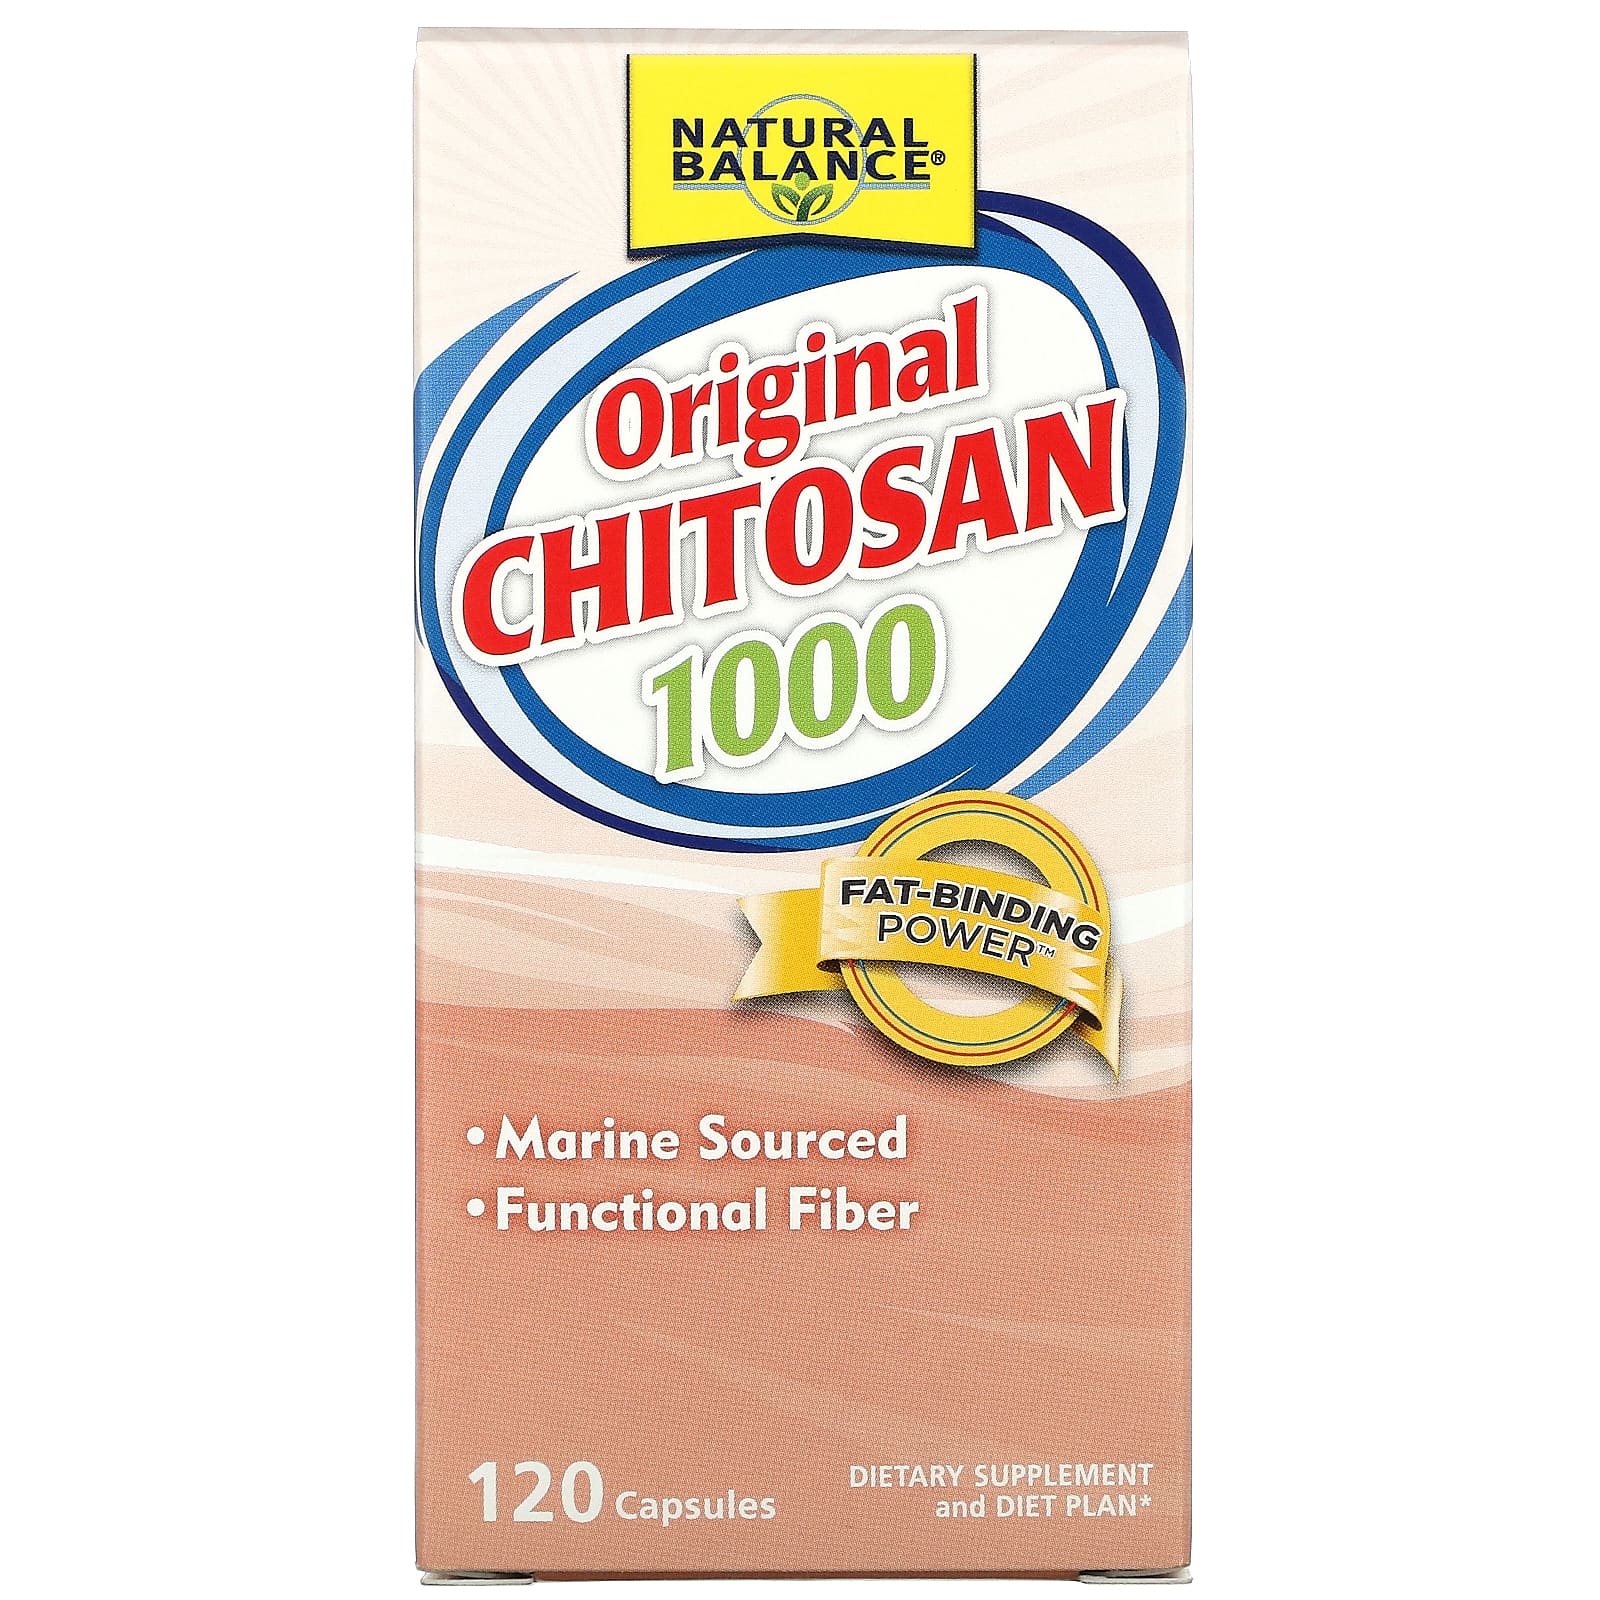 Natural Balance Original Chitosan, 250 Mg, 120 Capsules